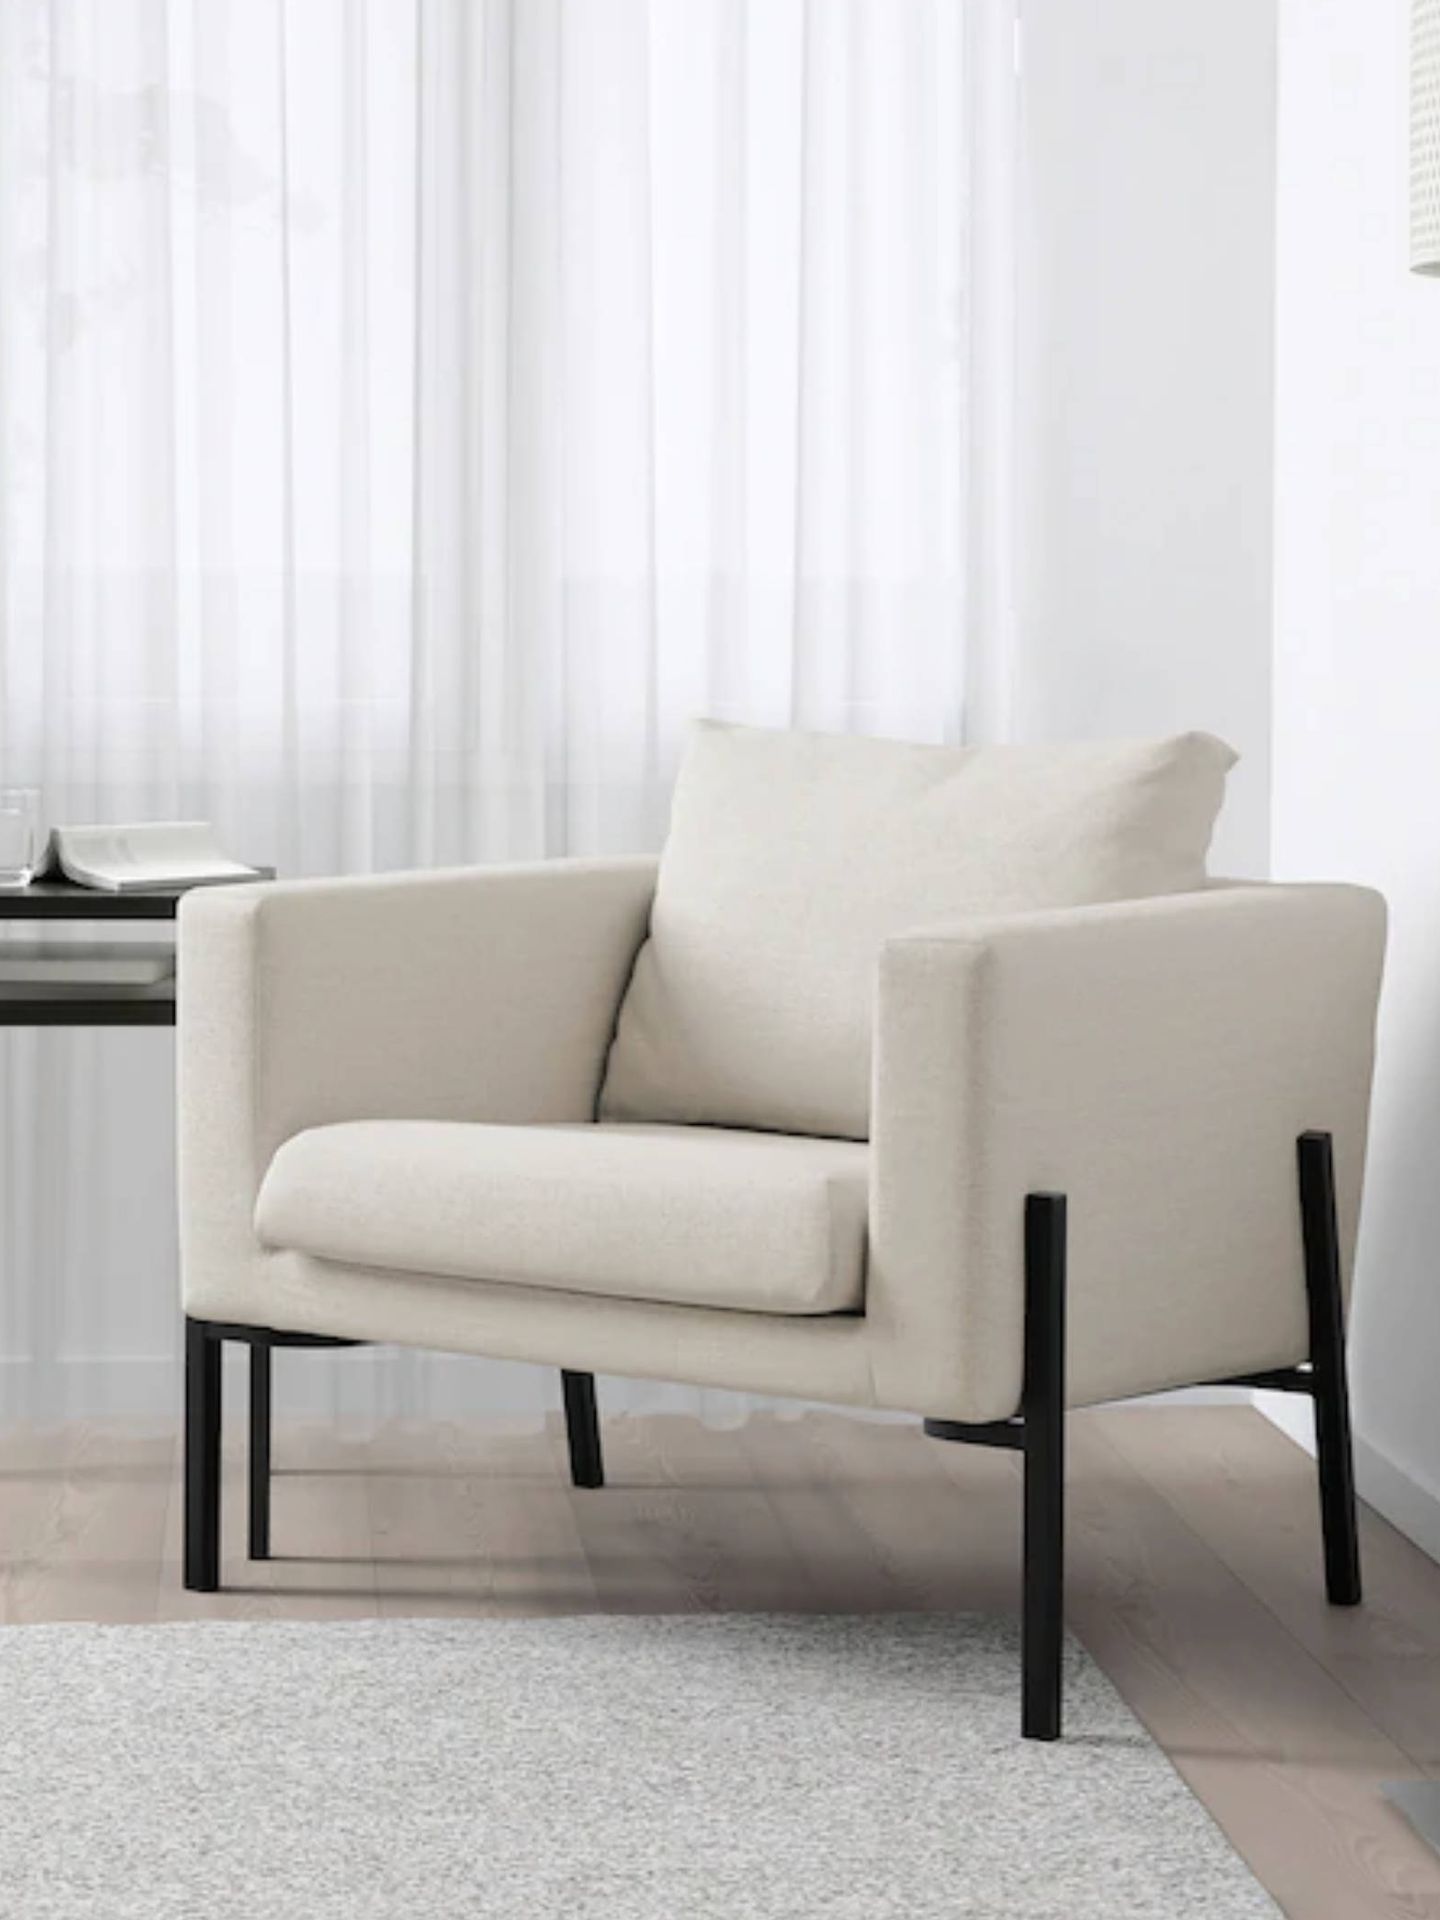 Decora con estos sillones de Ikea tu rincón de lectura perfecto. (Cortesía)